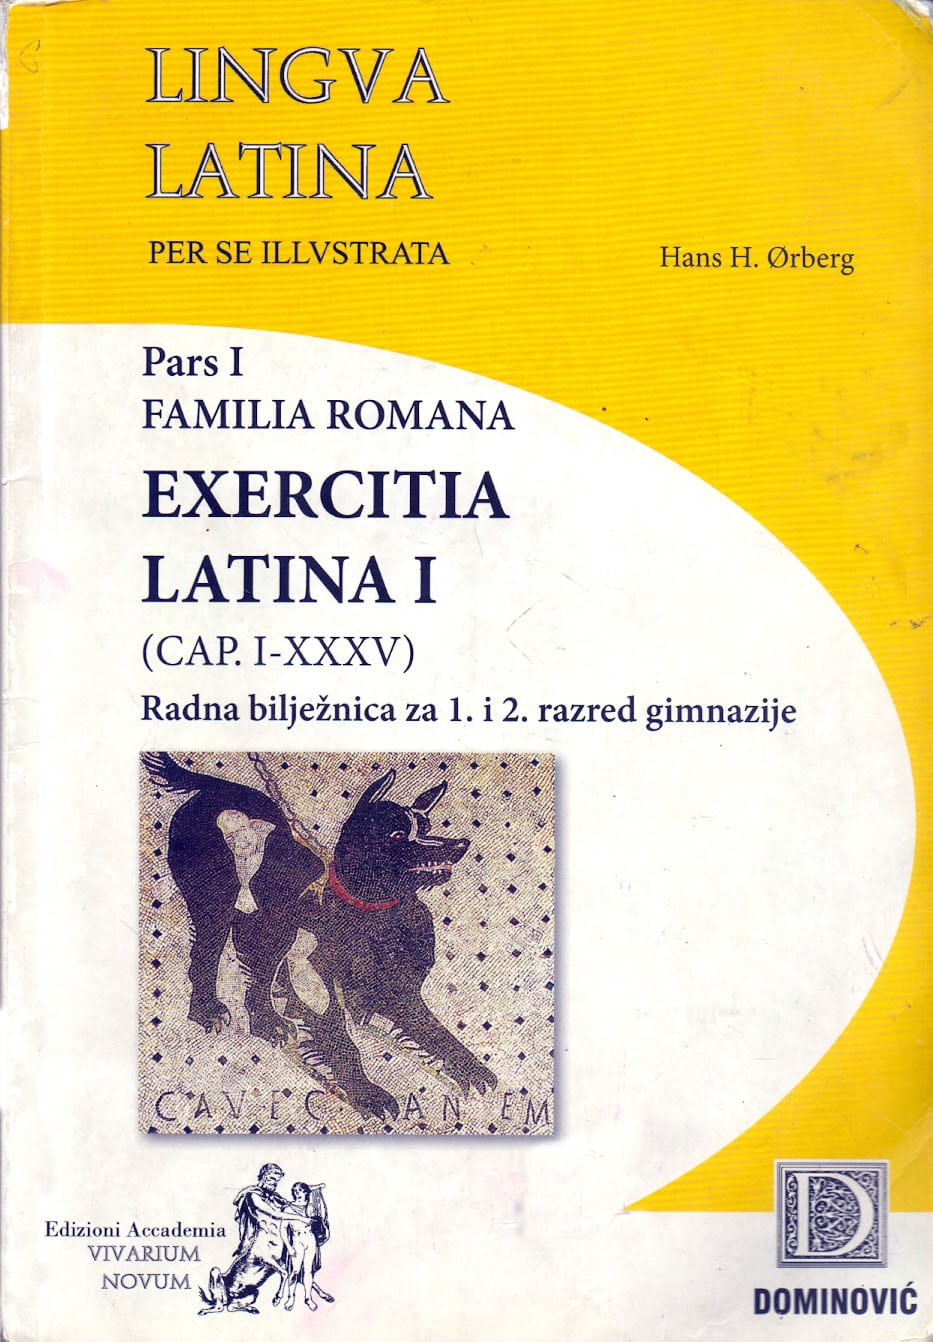 lingua latina per se illustrata radna bilježnica:  Pars I, Familia Romana, Exercitia Latina I autora Hans Henning Ørberg